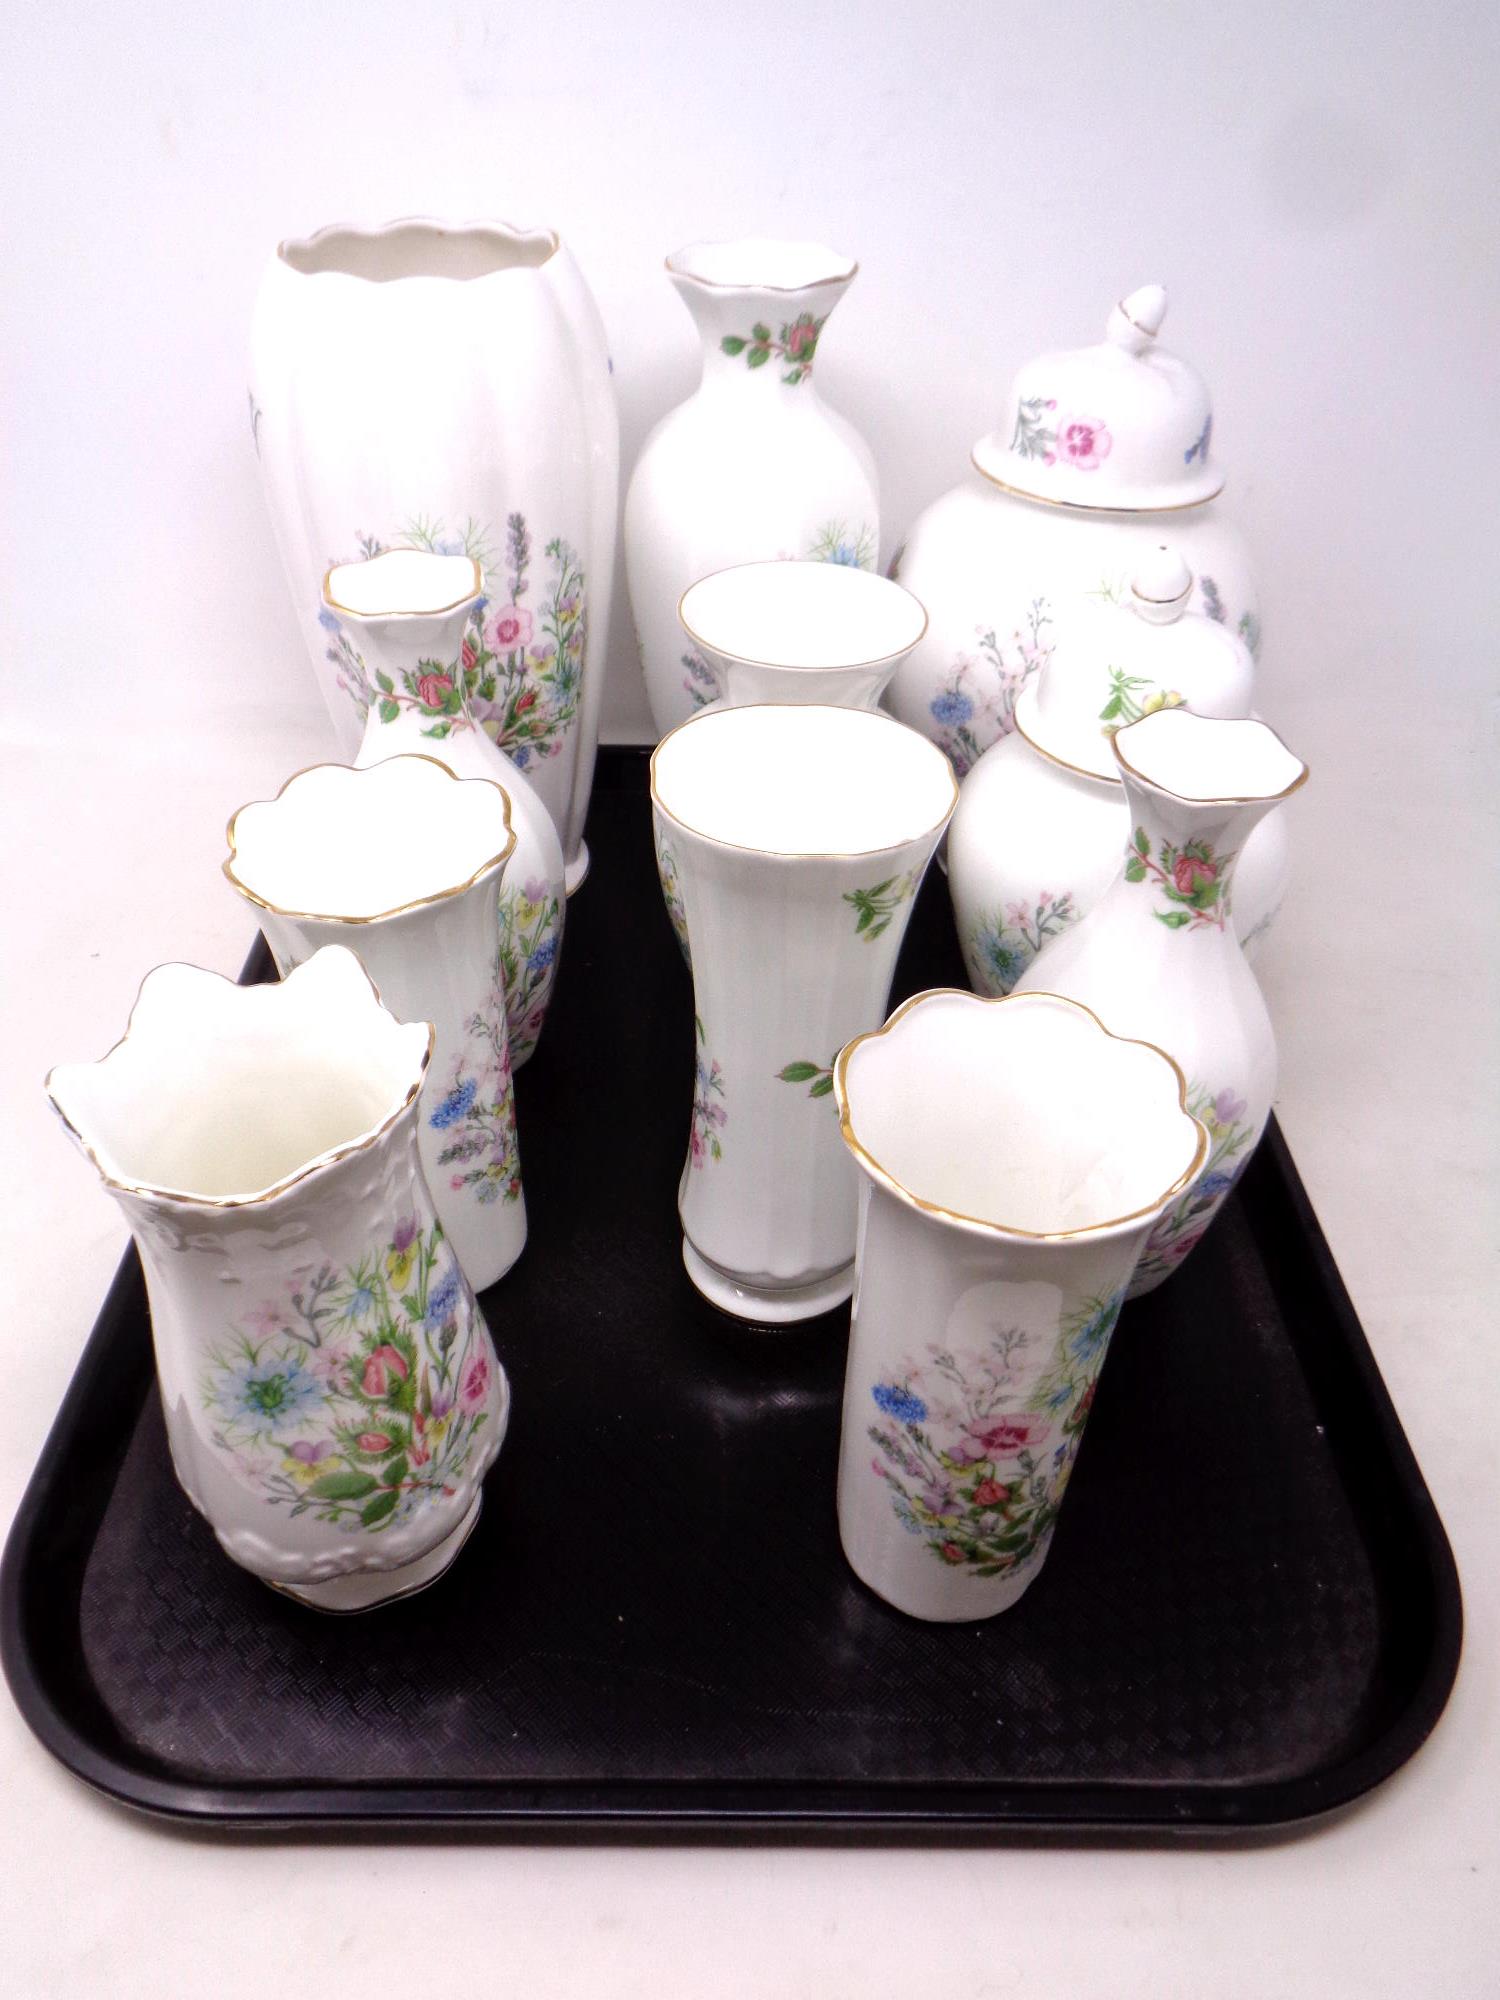 A tray of Aynsley Wild Tudor china vases